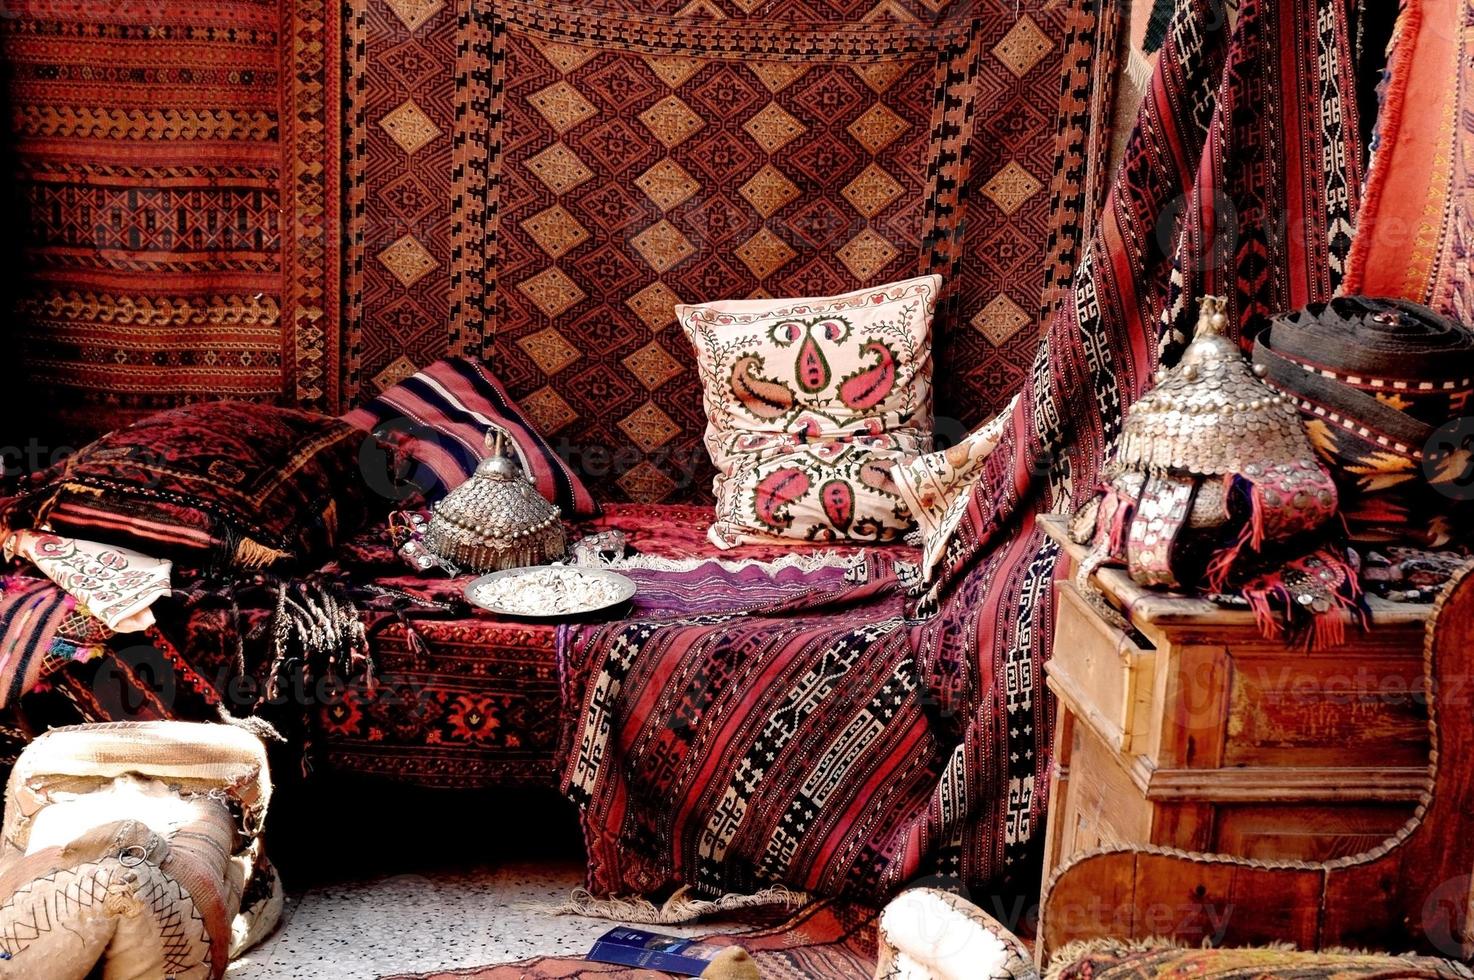 um olhar bonito dentro de uma loja de tapetes turcos em um bazar foto